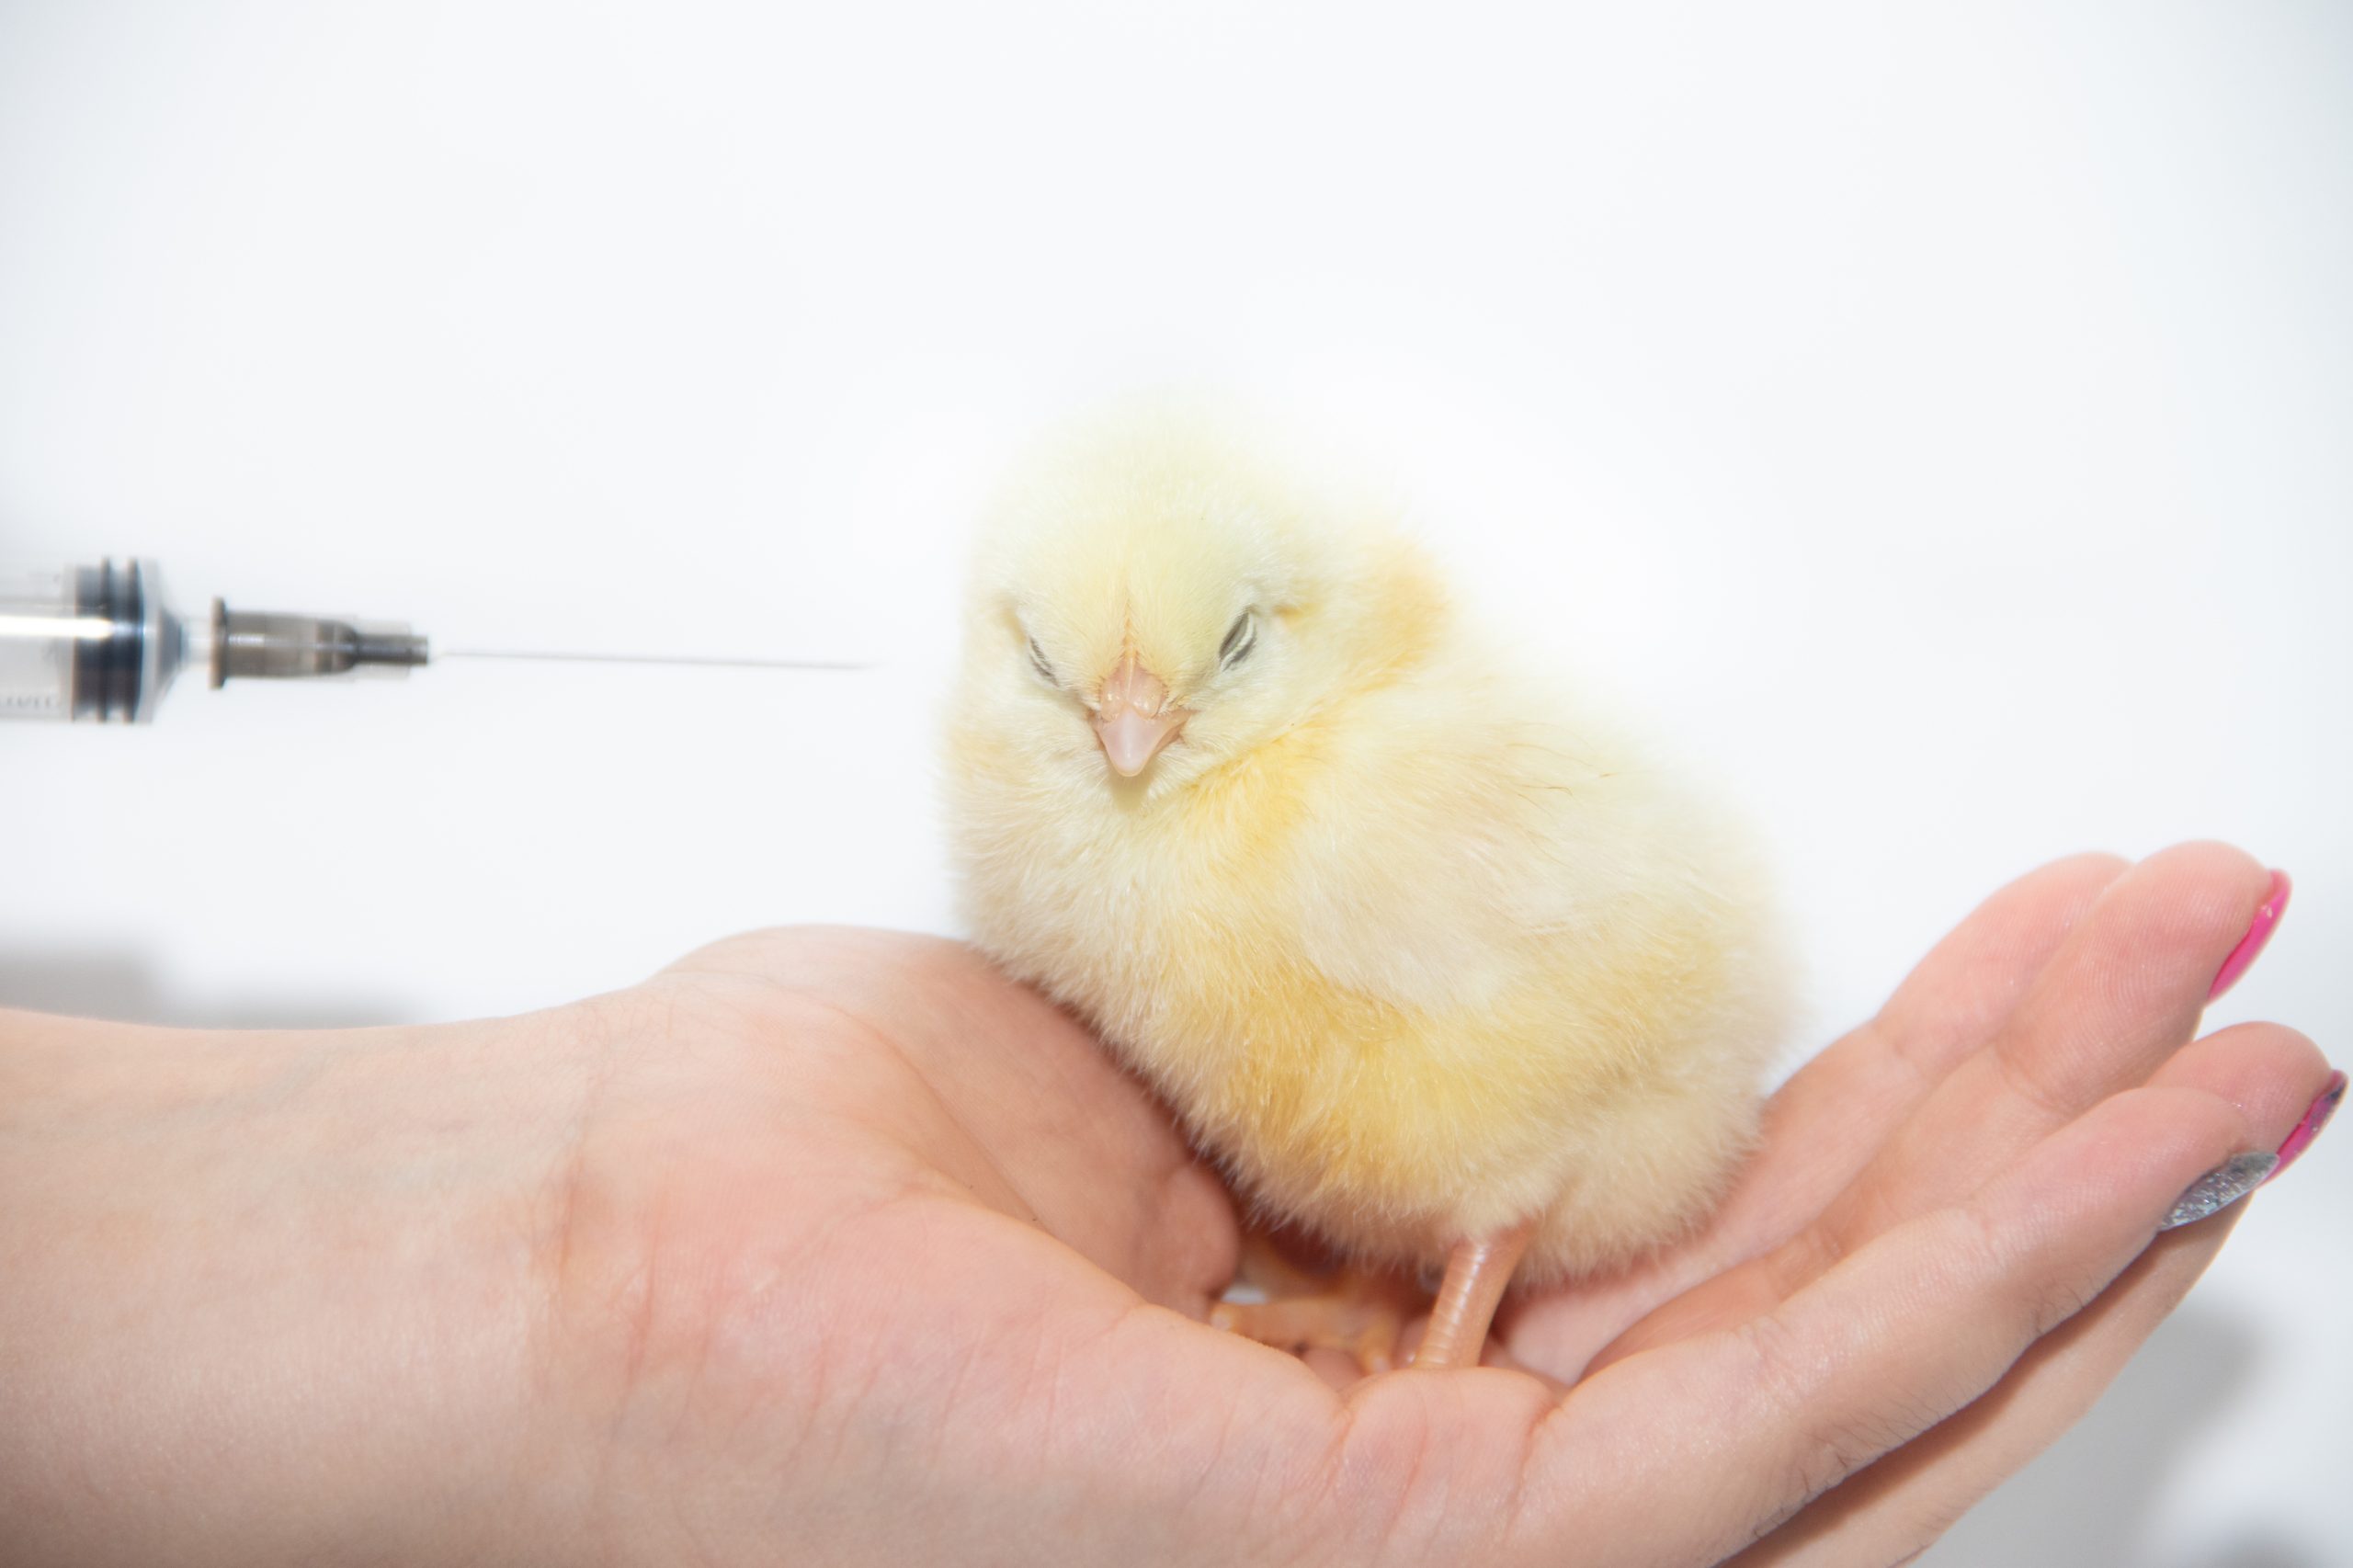 La estrategia de vacunación contra la gripe aviar para las aves de corral puede cambiar en Rusia